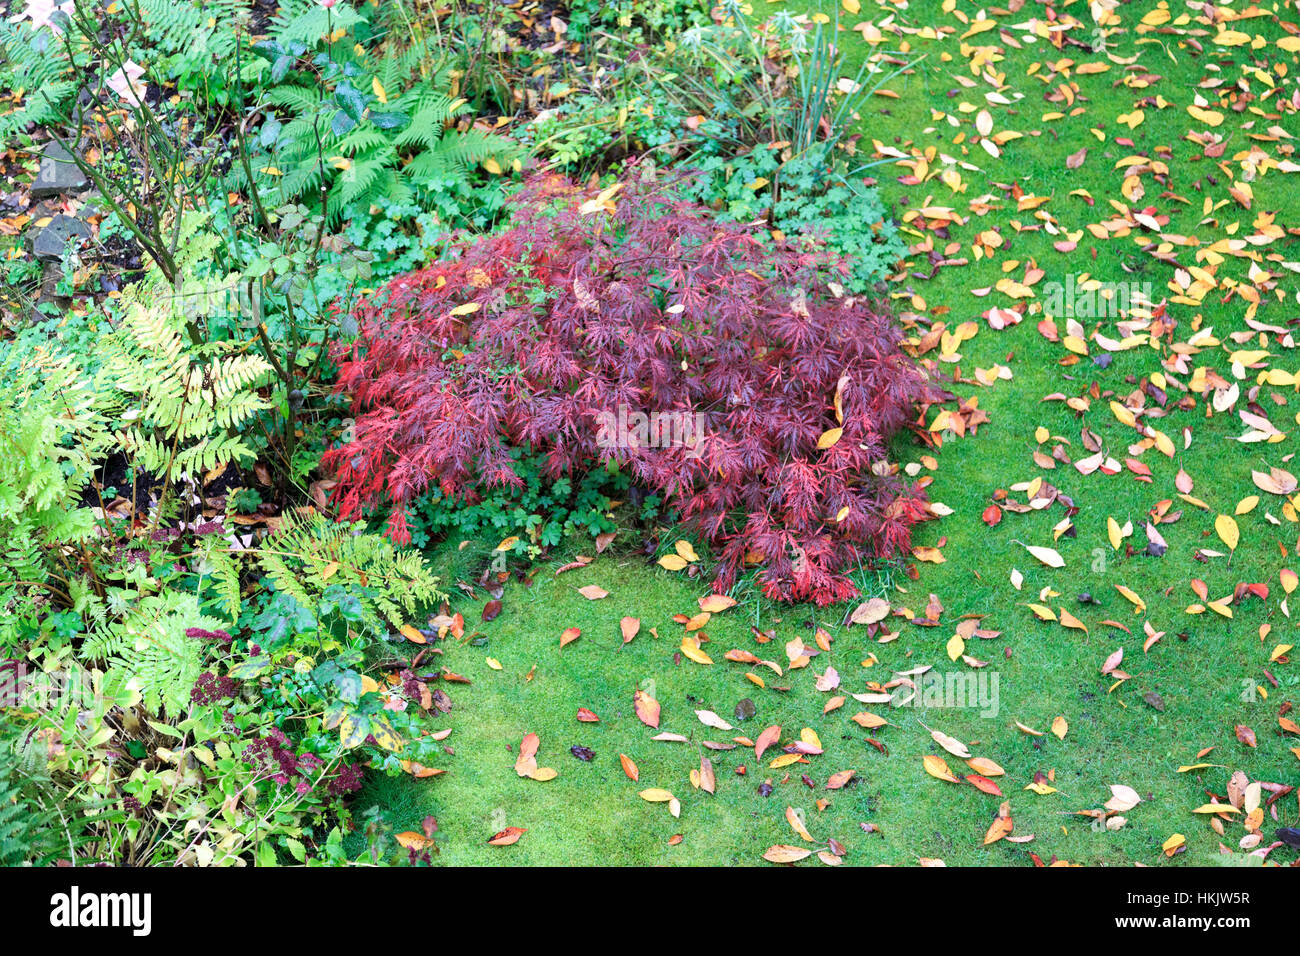 Acer palmatum Dissectum Garnet Japanese maple in autumn Stock Photo